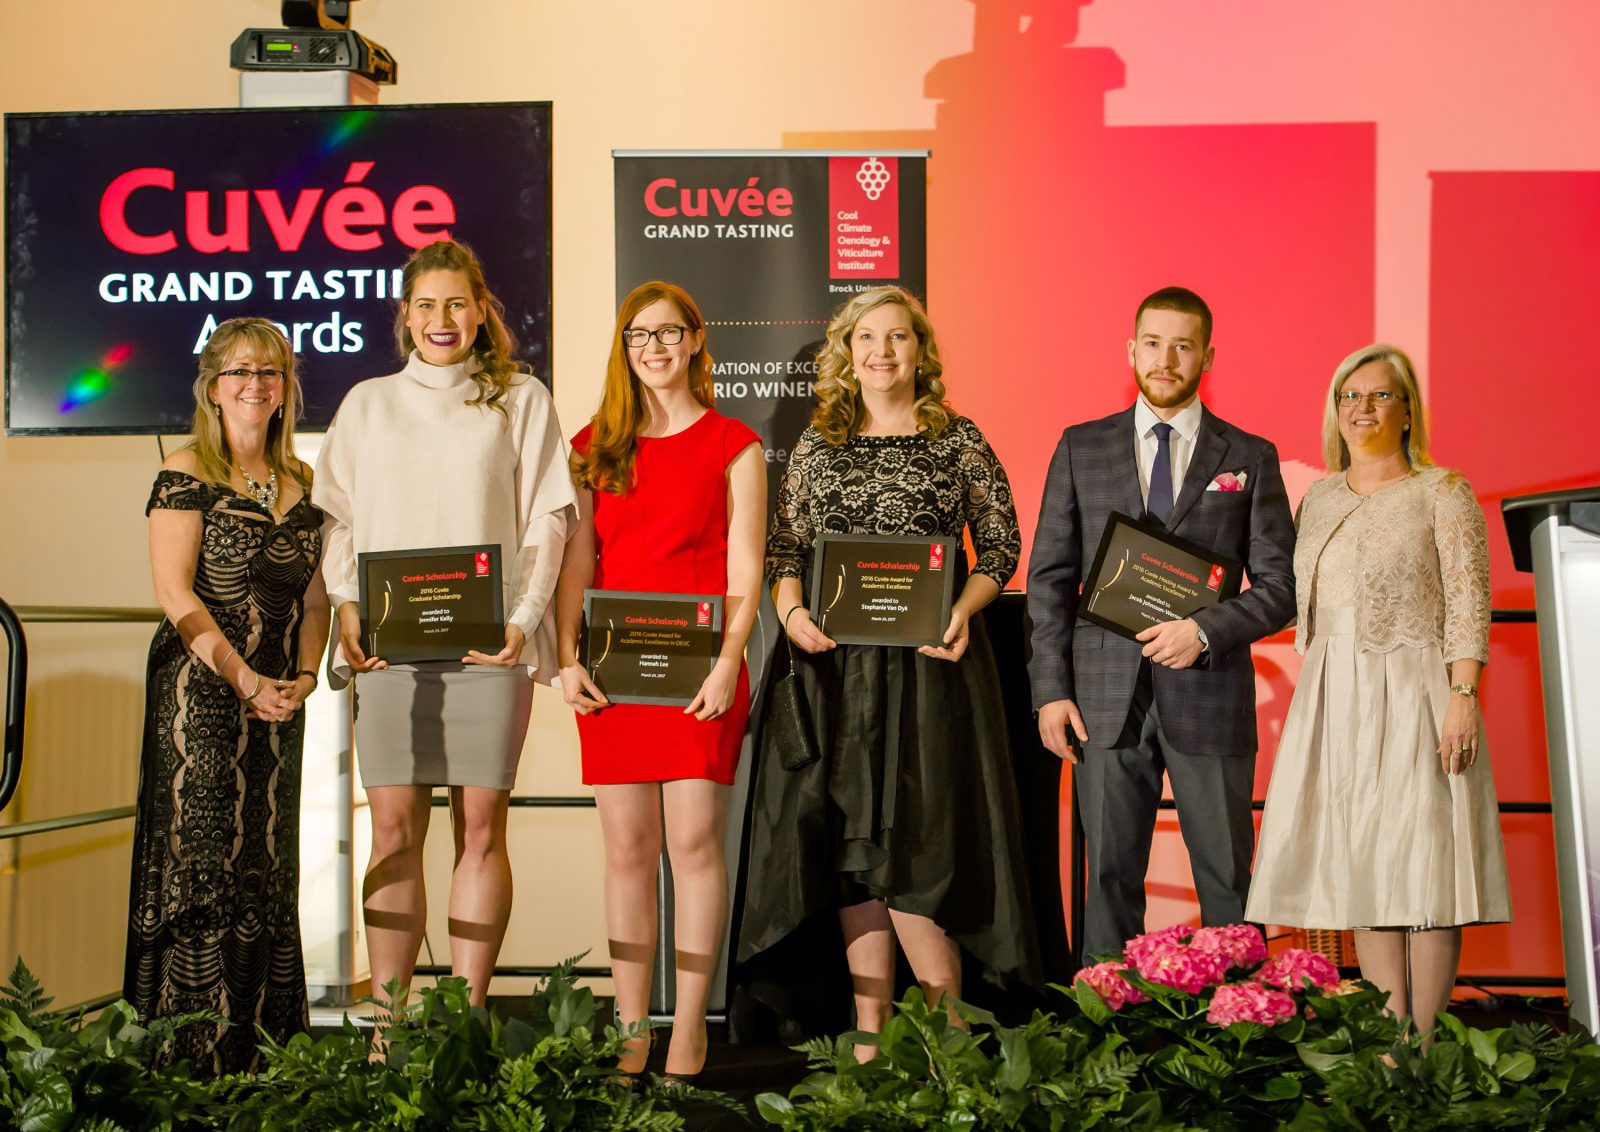 Cuvee award winners